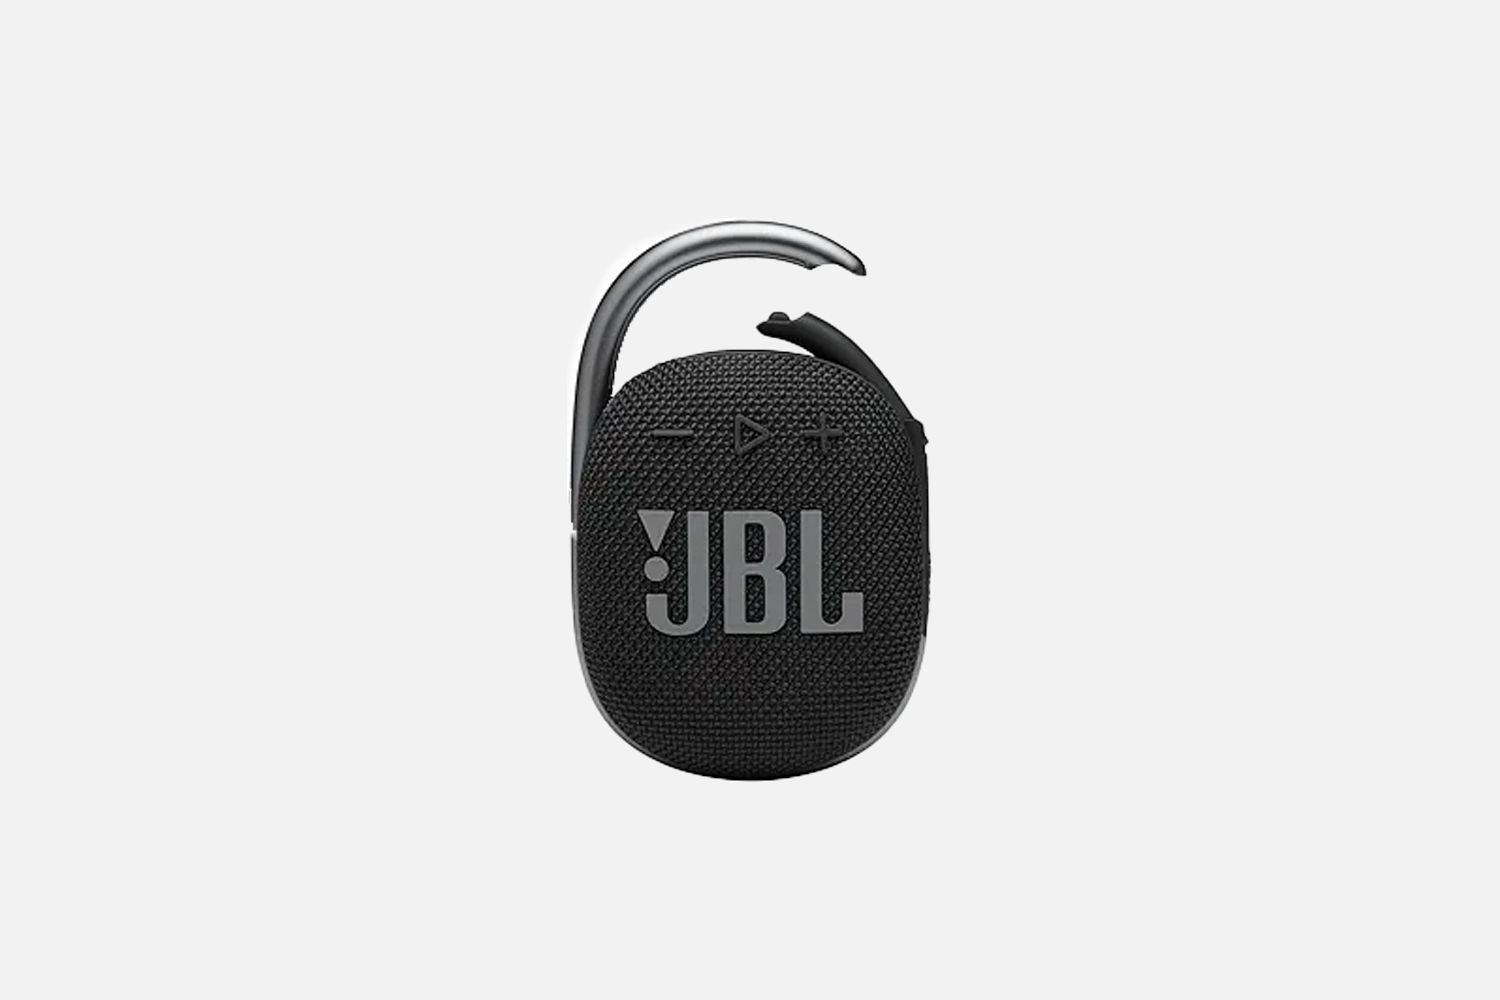 JBL Clip 4 Speaker